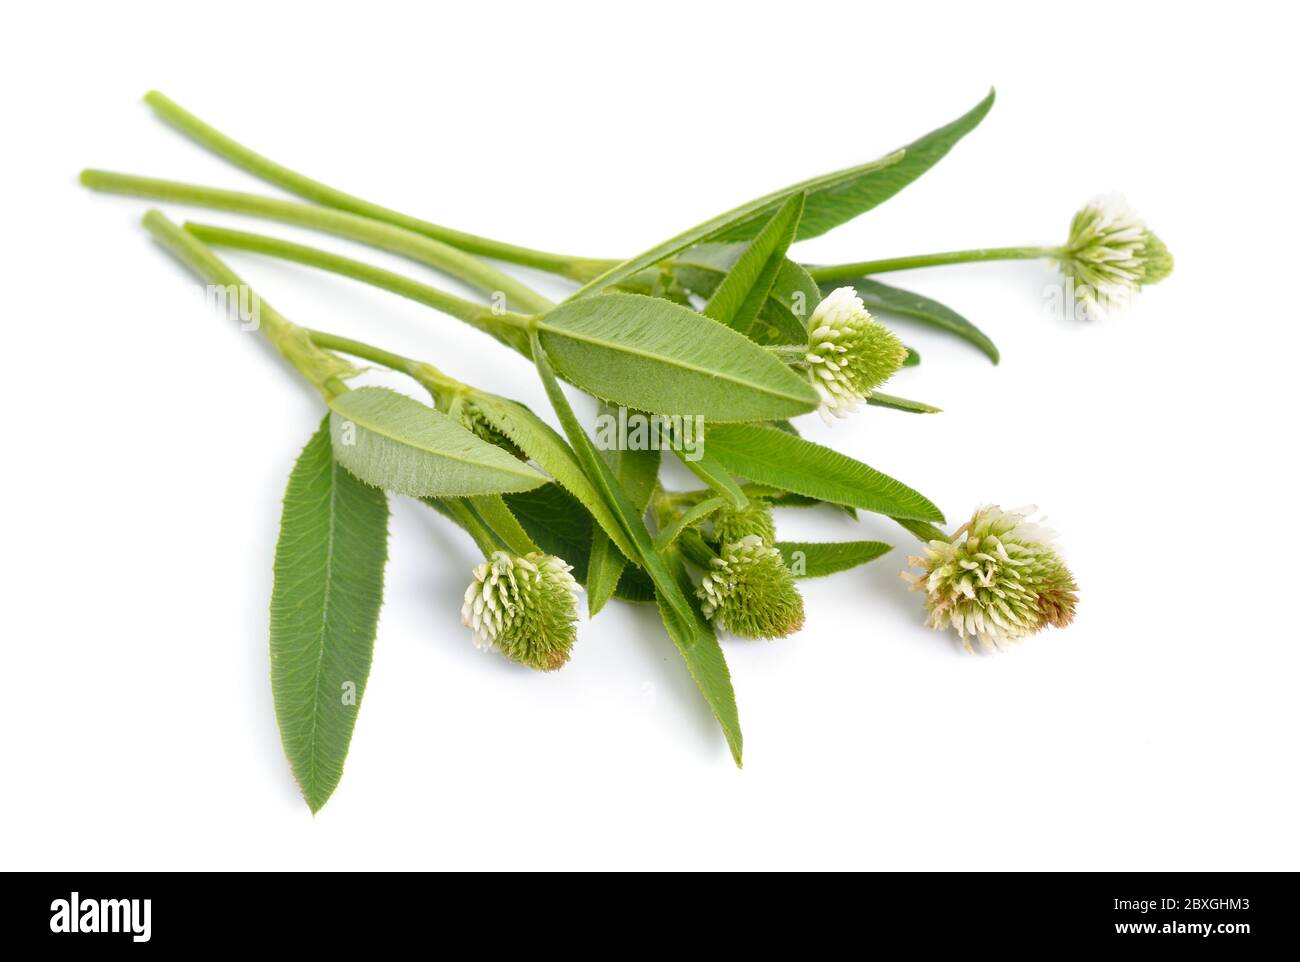 Trifolium montanum, the mountain clover. Isolated on white background Stock Photo